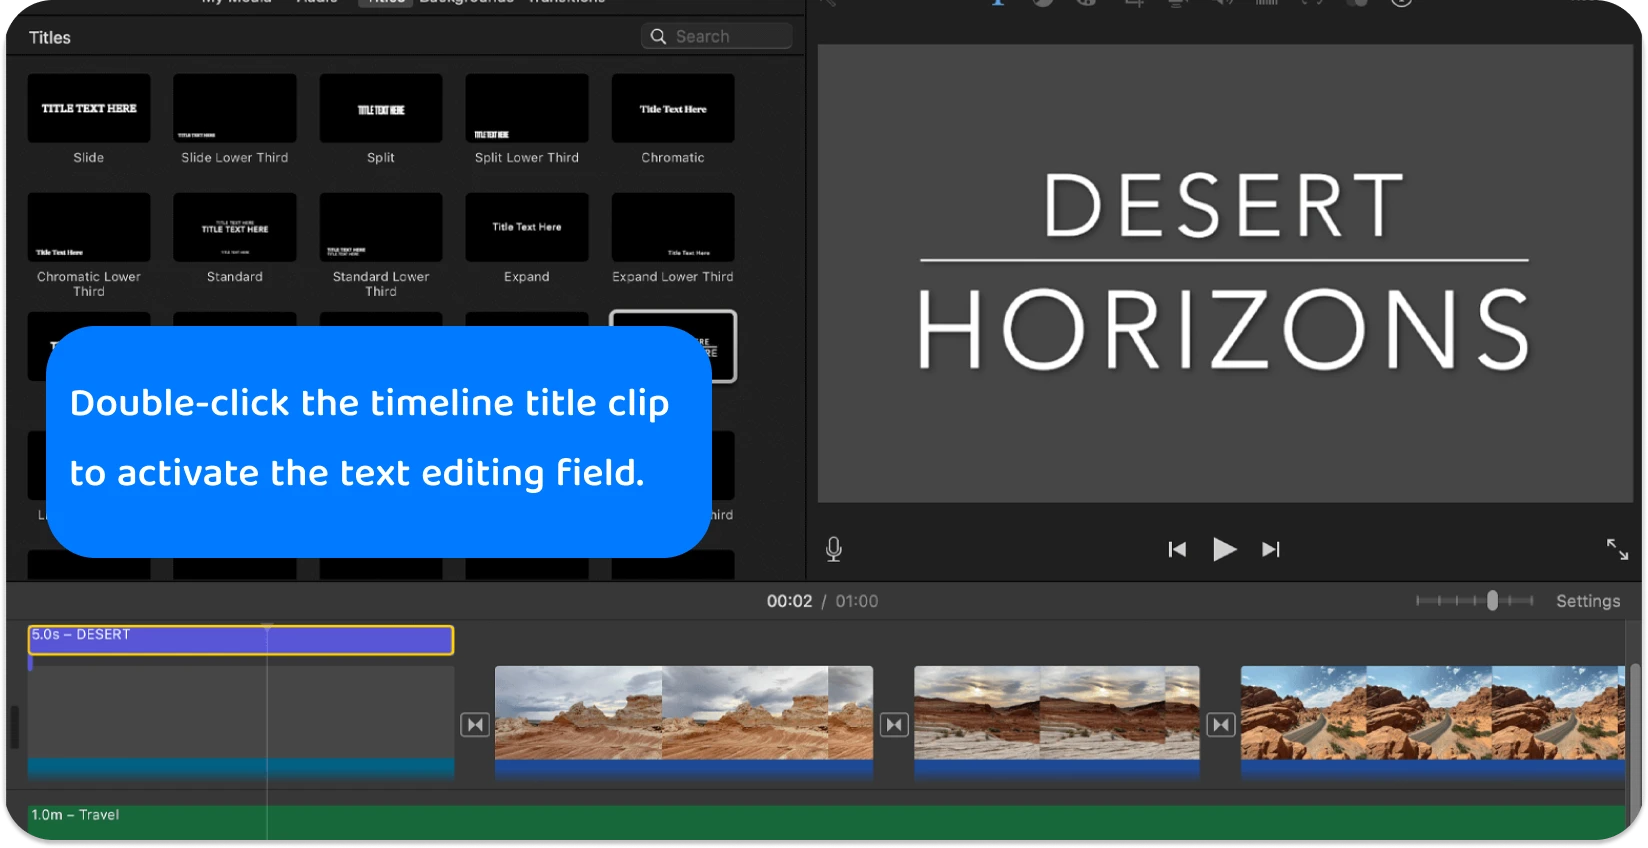 iMovie nosaukumu interfeiss, kas parāda dažādus teksta stilus un formātus profesionālo nosaukumu pievienošanai video projektiem.
